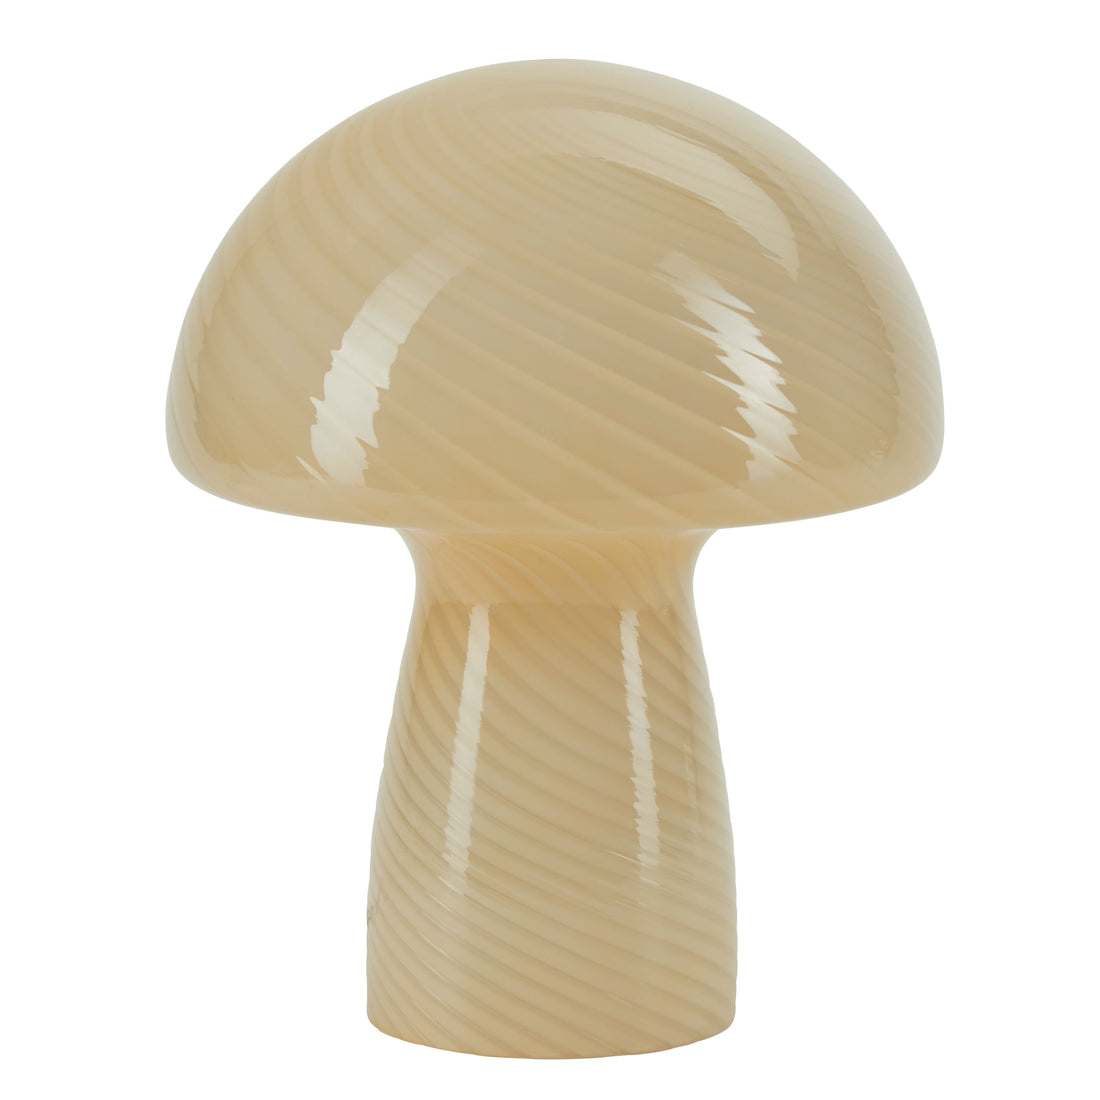 Bahne - Svampelampe / Mushroom bordlampe, gul - H23 cm.